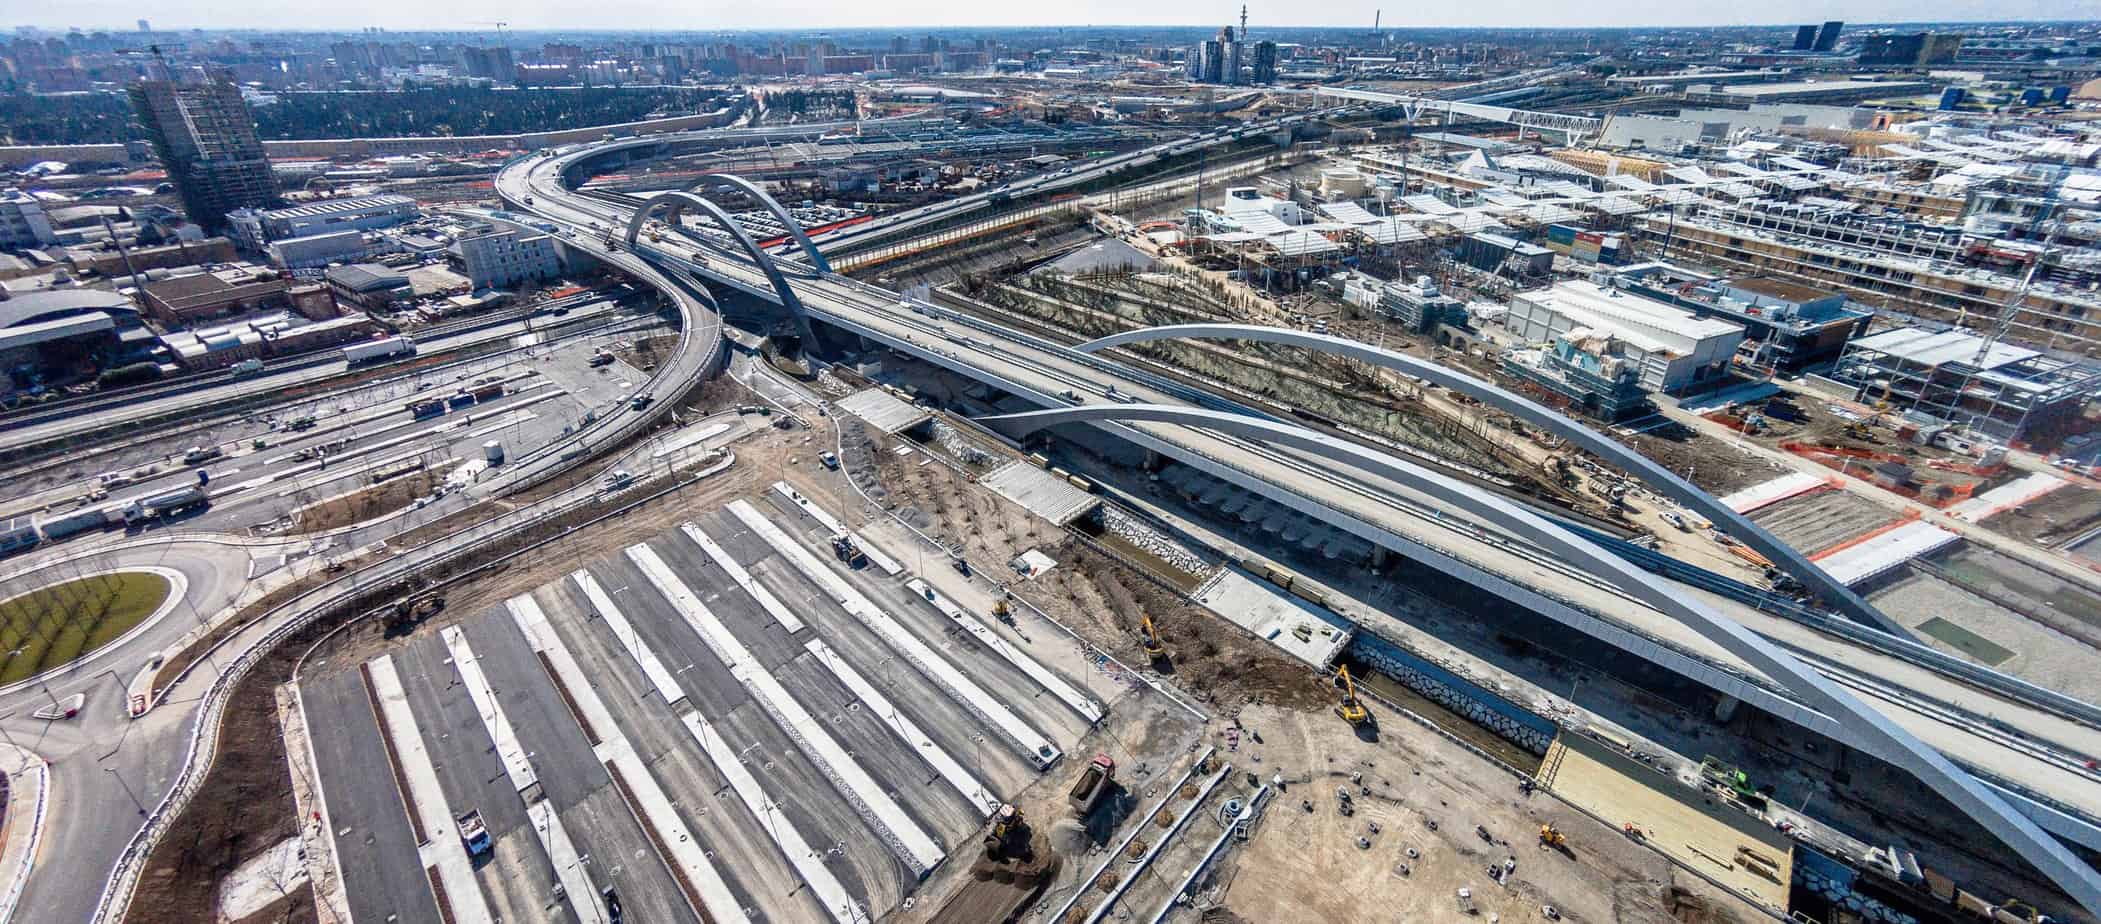 Una suggestiva panoramica del cantiere della grande viabilità Expo realizzata con il drone